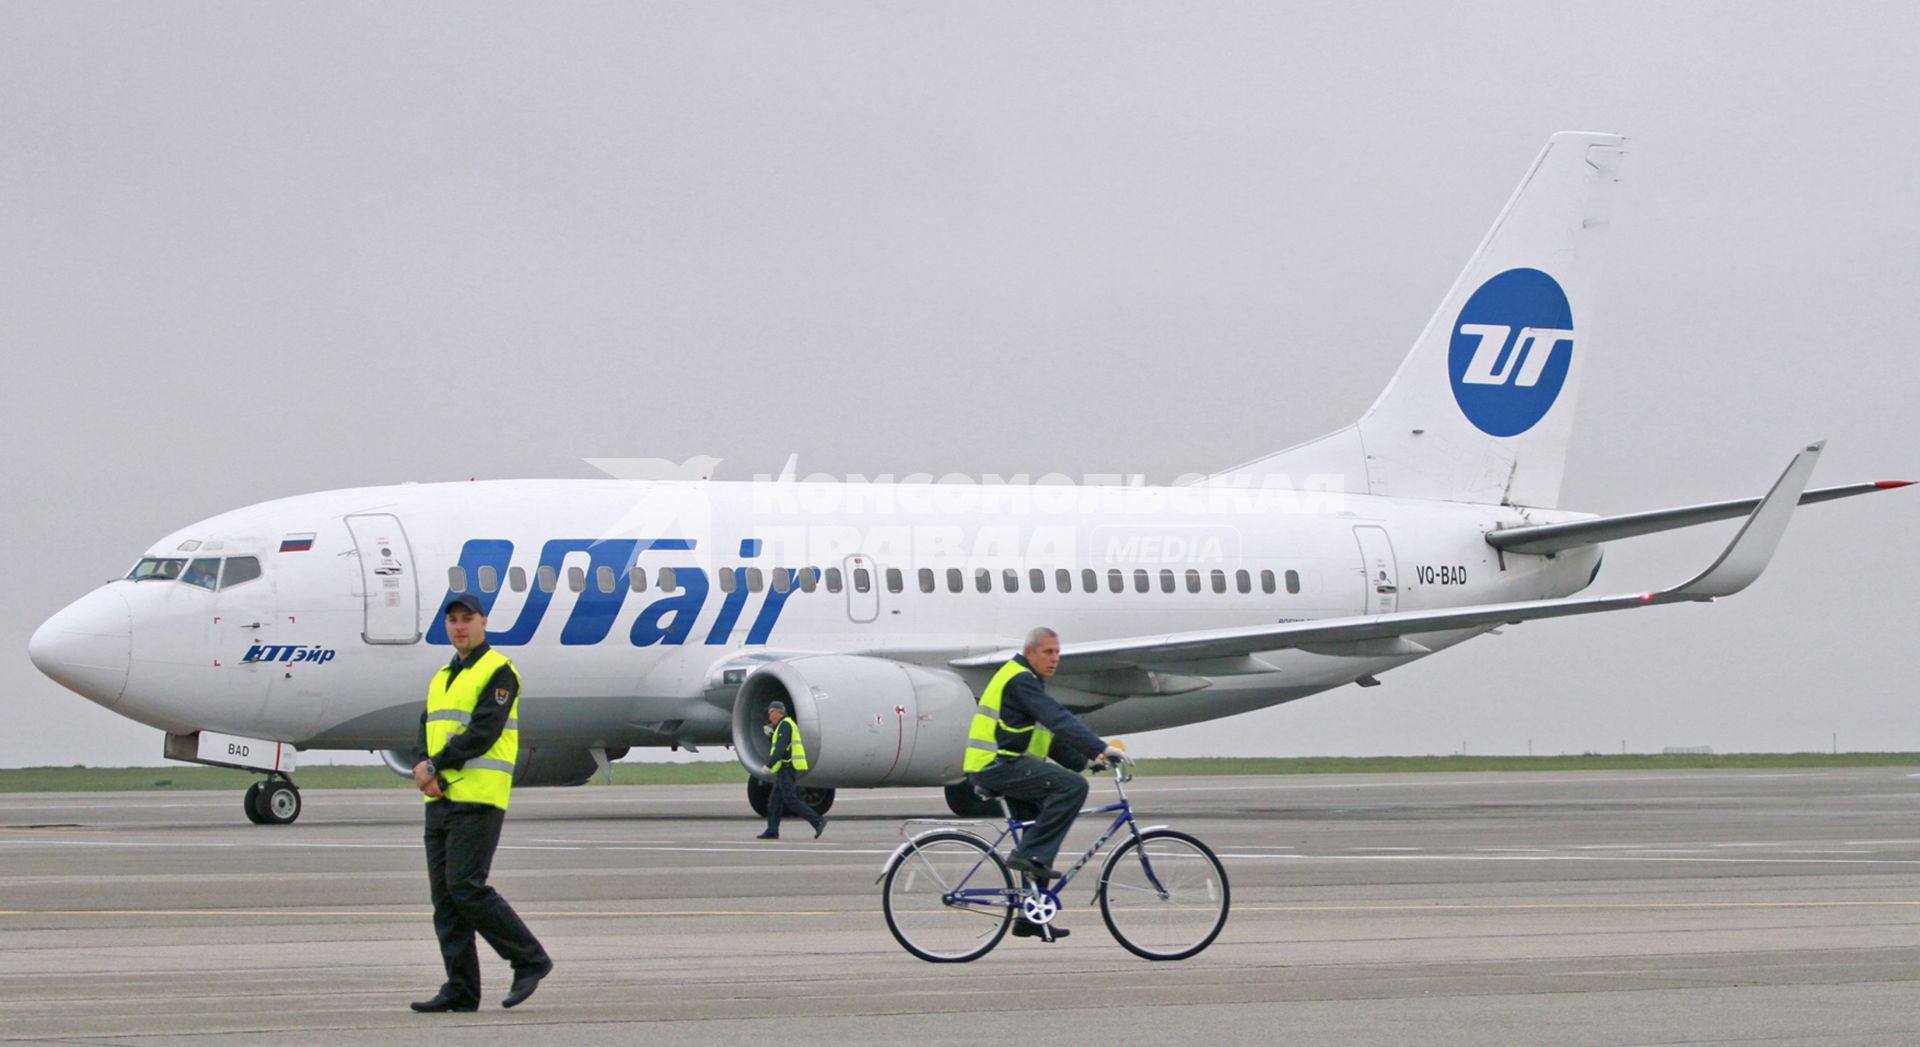 Пассажирский самолет Boeing 737-500 авиакомпания `UTair`. Служащий аэропорта едет по взлетной полосе на велосипеде.